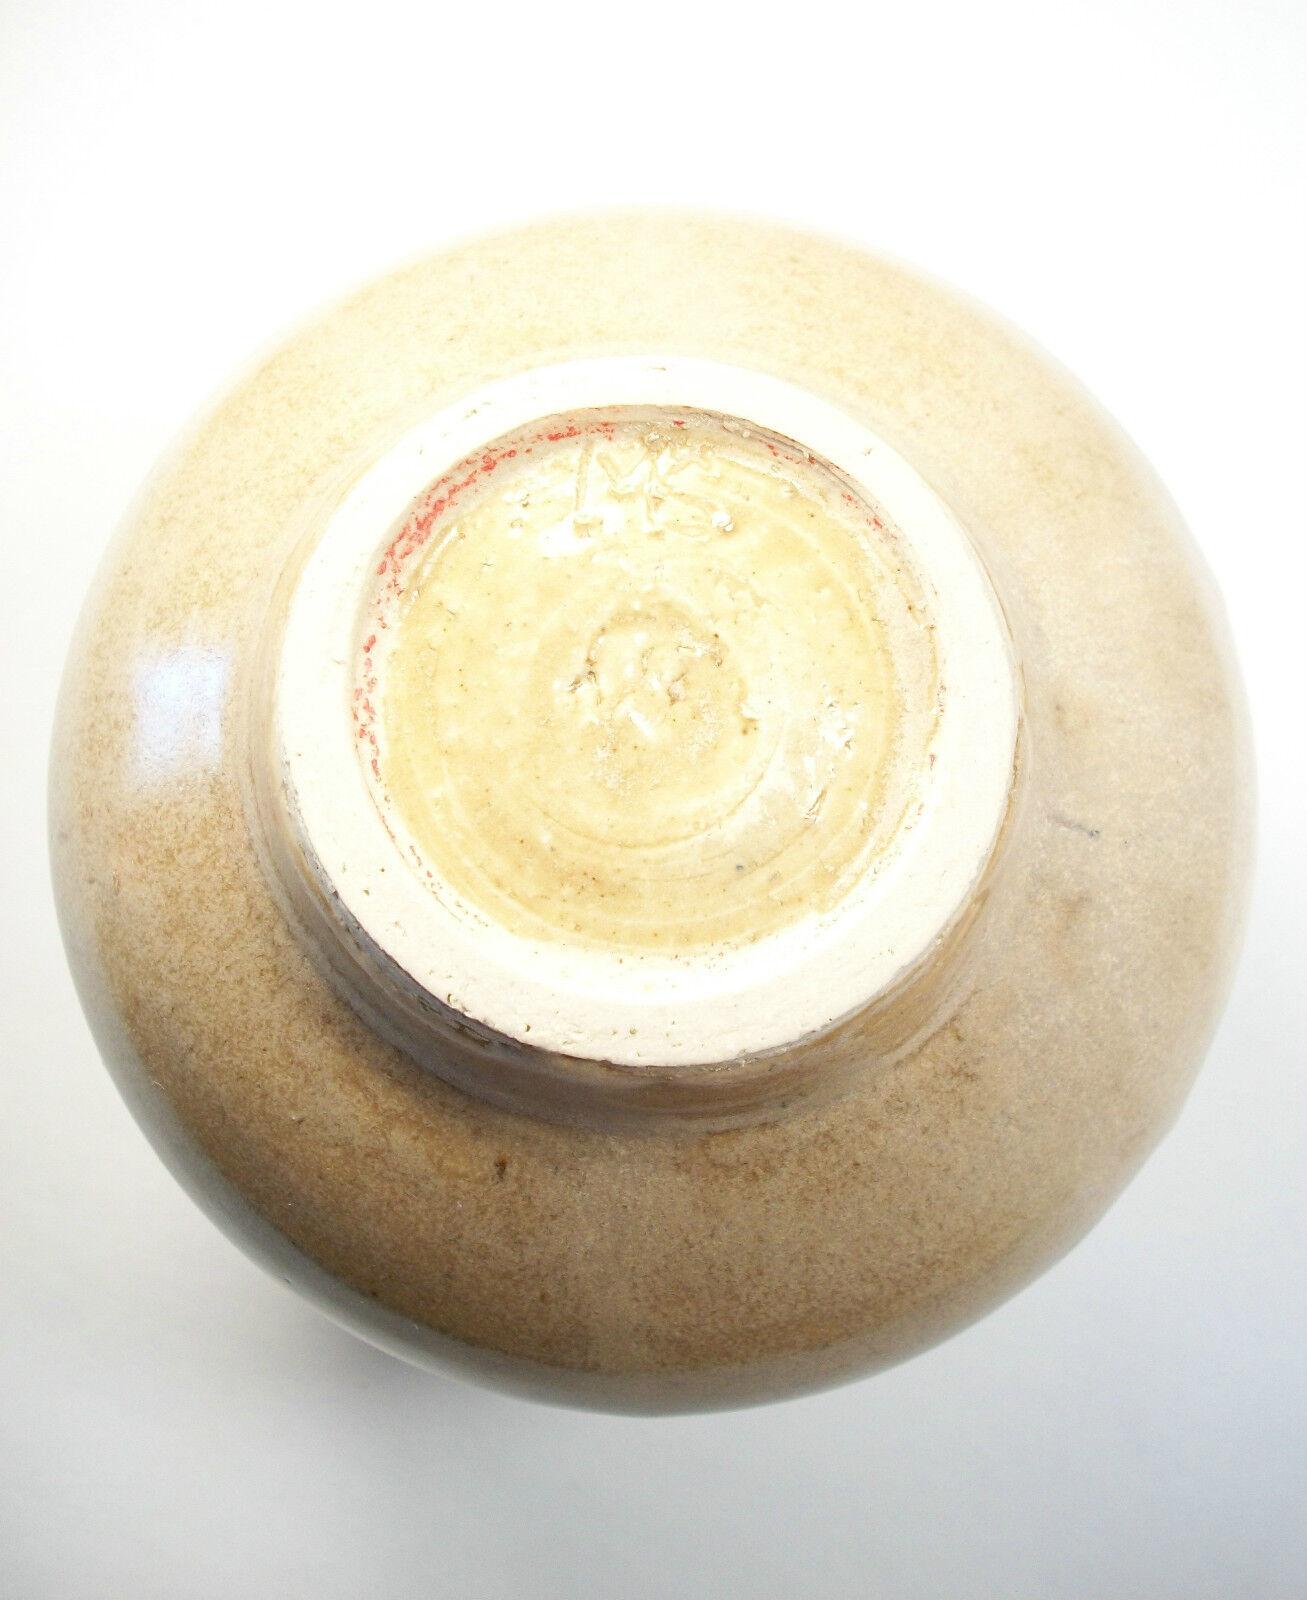 Vintage Porcelaneous Studio Pottery Vase - Modern Design - Signed - circa 1980s For Sale 3